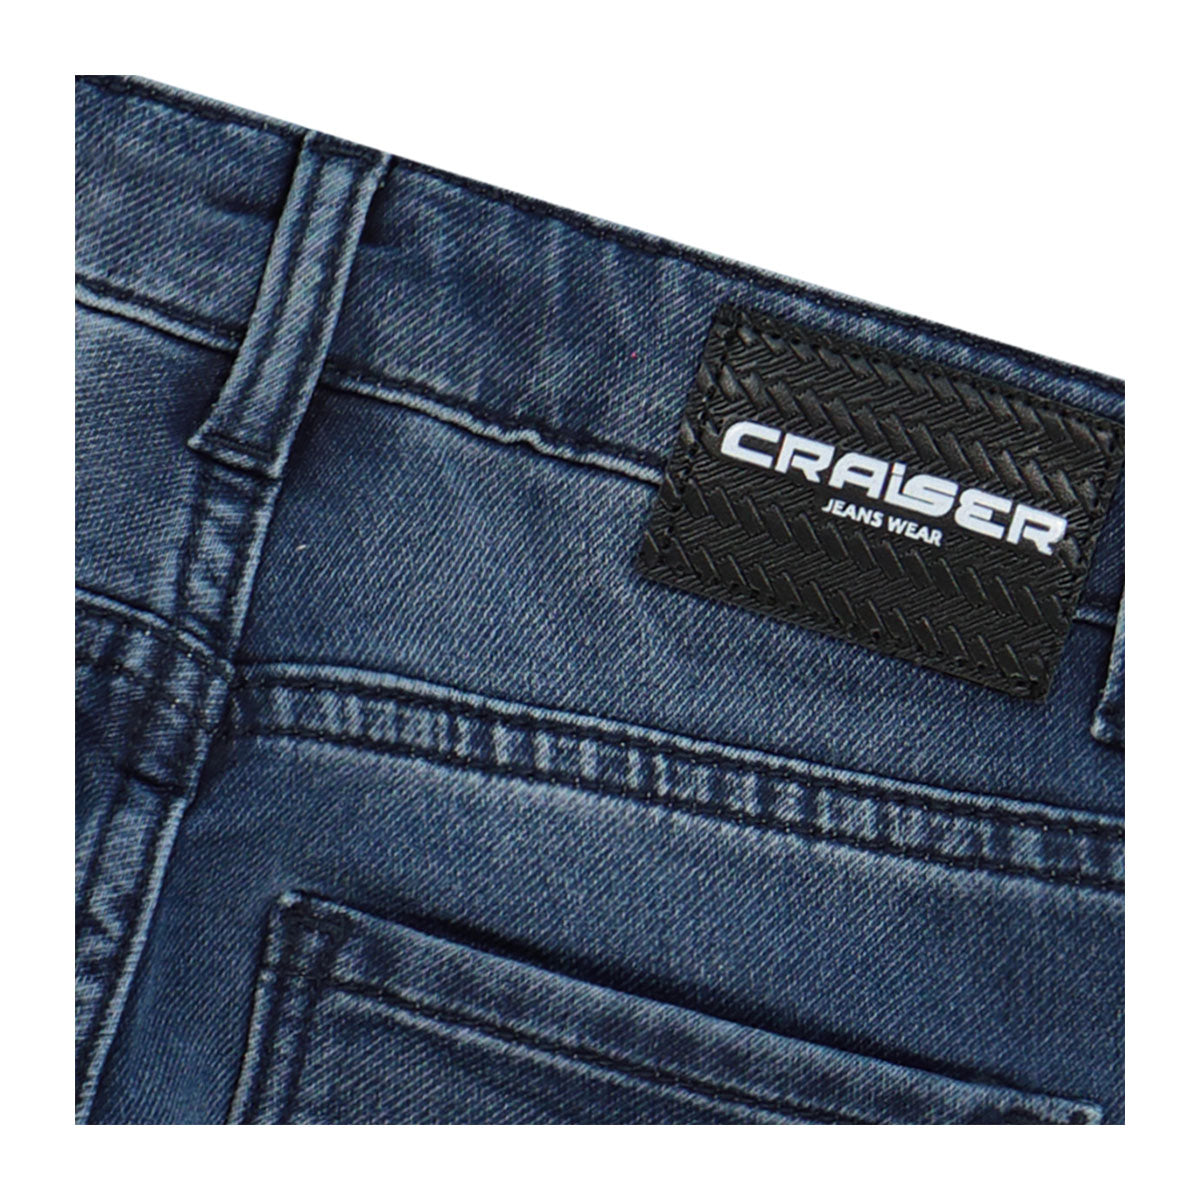 מכנסי ג'ינס CRAISER משופשפים לילדים